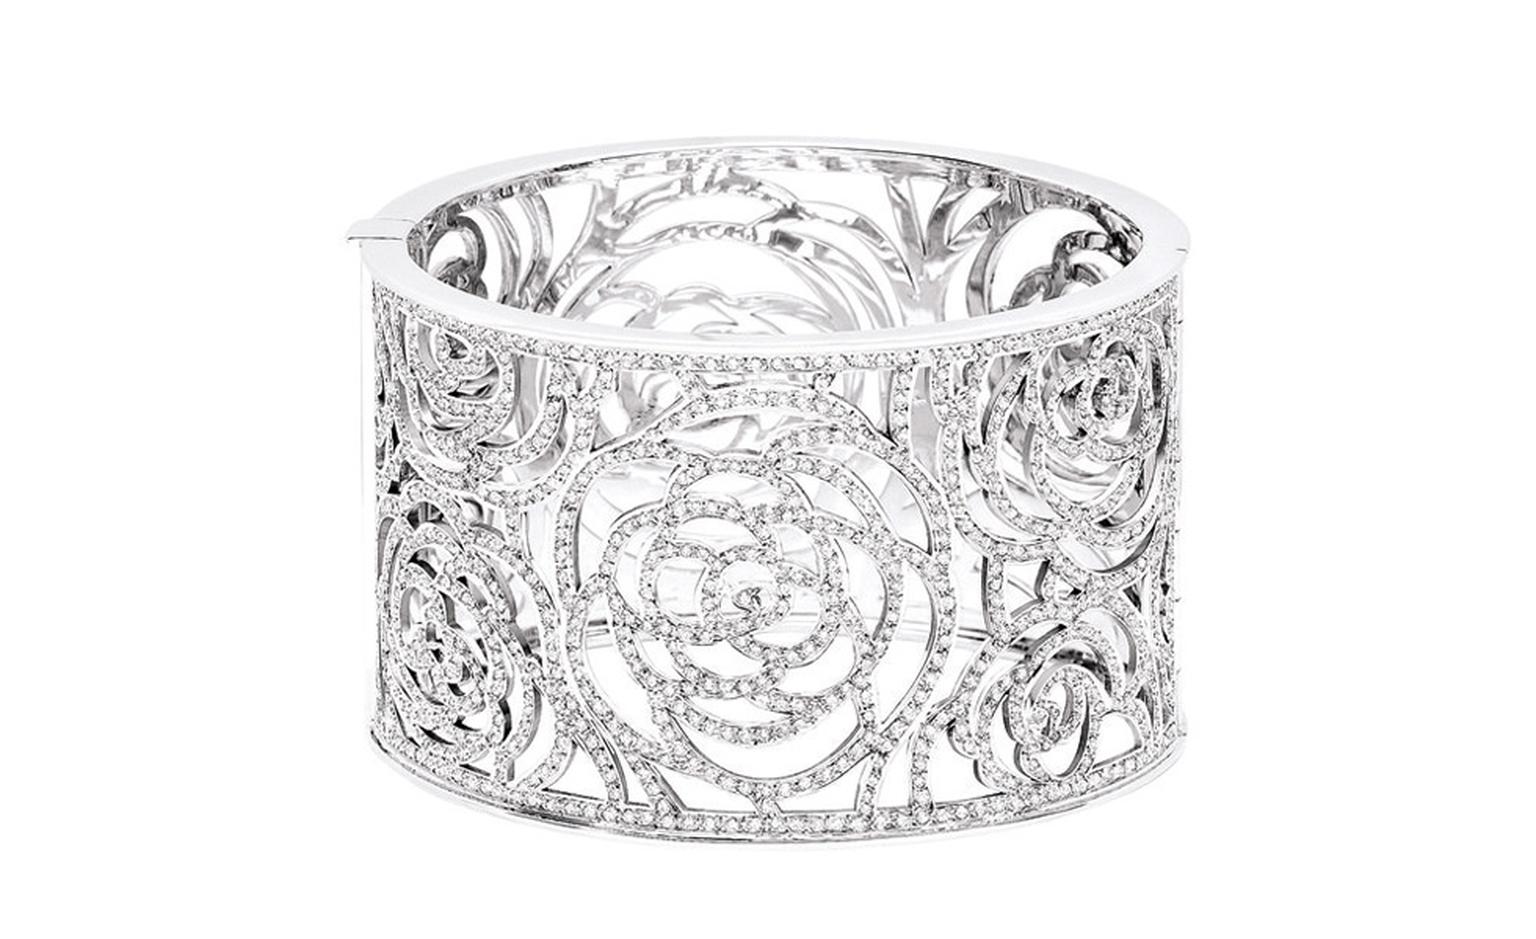 Chanel Camelia diamond and white gold cuff